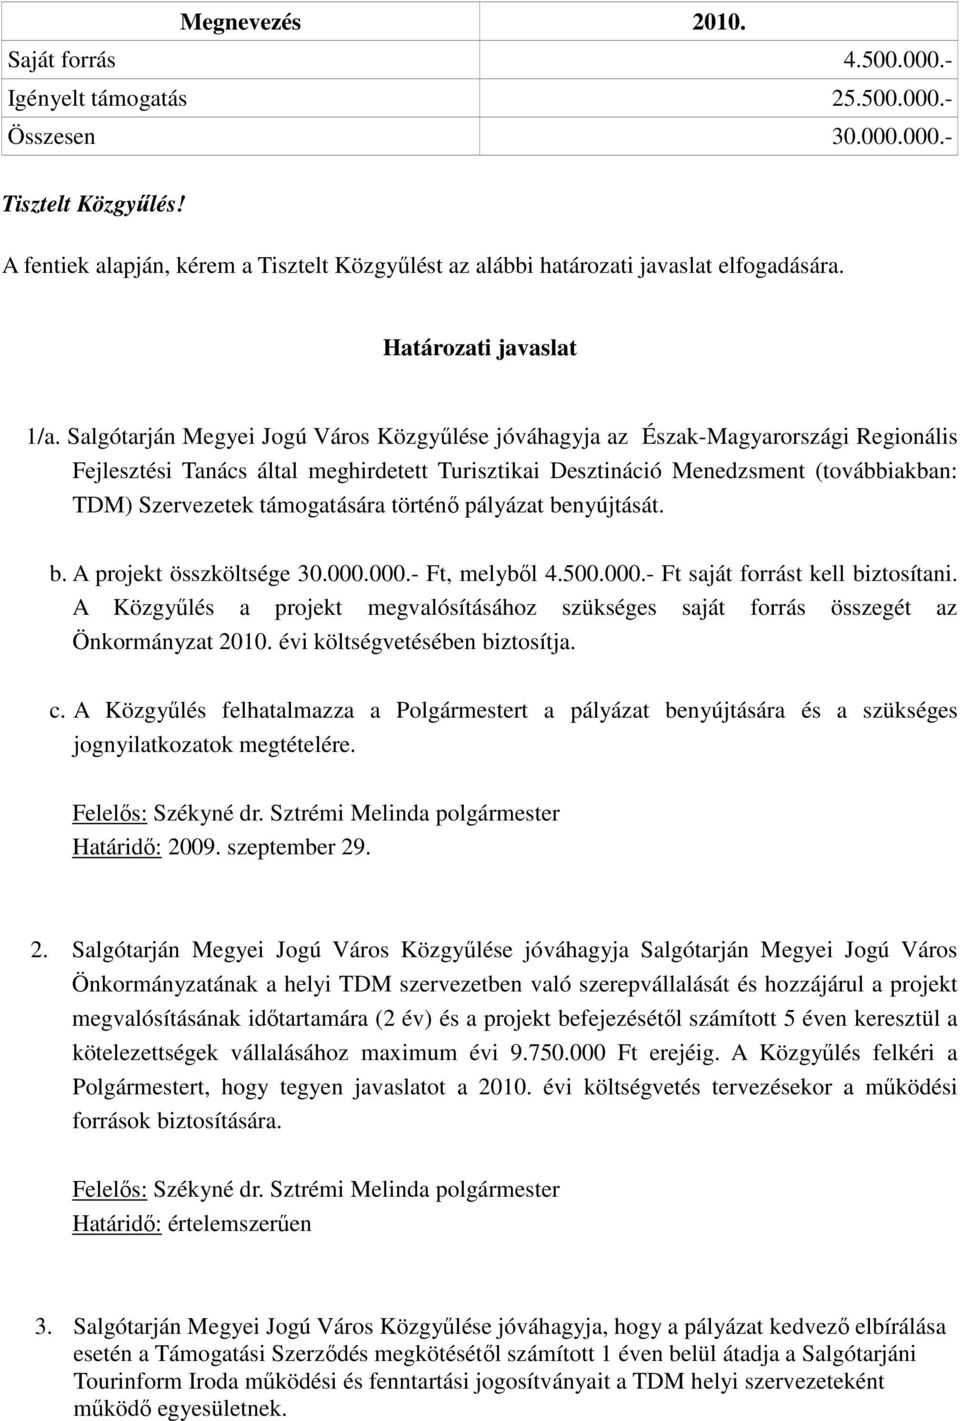 Salgótarján Megyei Jogú Város Közgyőlése jóváhagyja az Észak-Magyarországi Regionális Fejlesztési Tanács által meghirdetett Turisztikai Desztináció Menedzsment (továbbiakban: TDM) Szervezetek